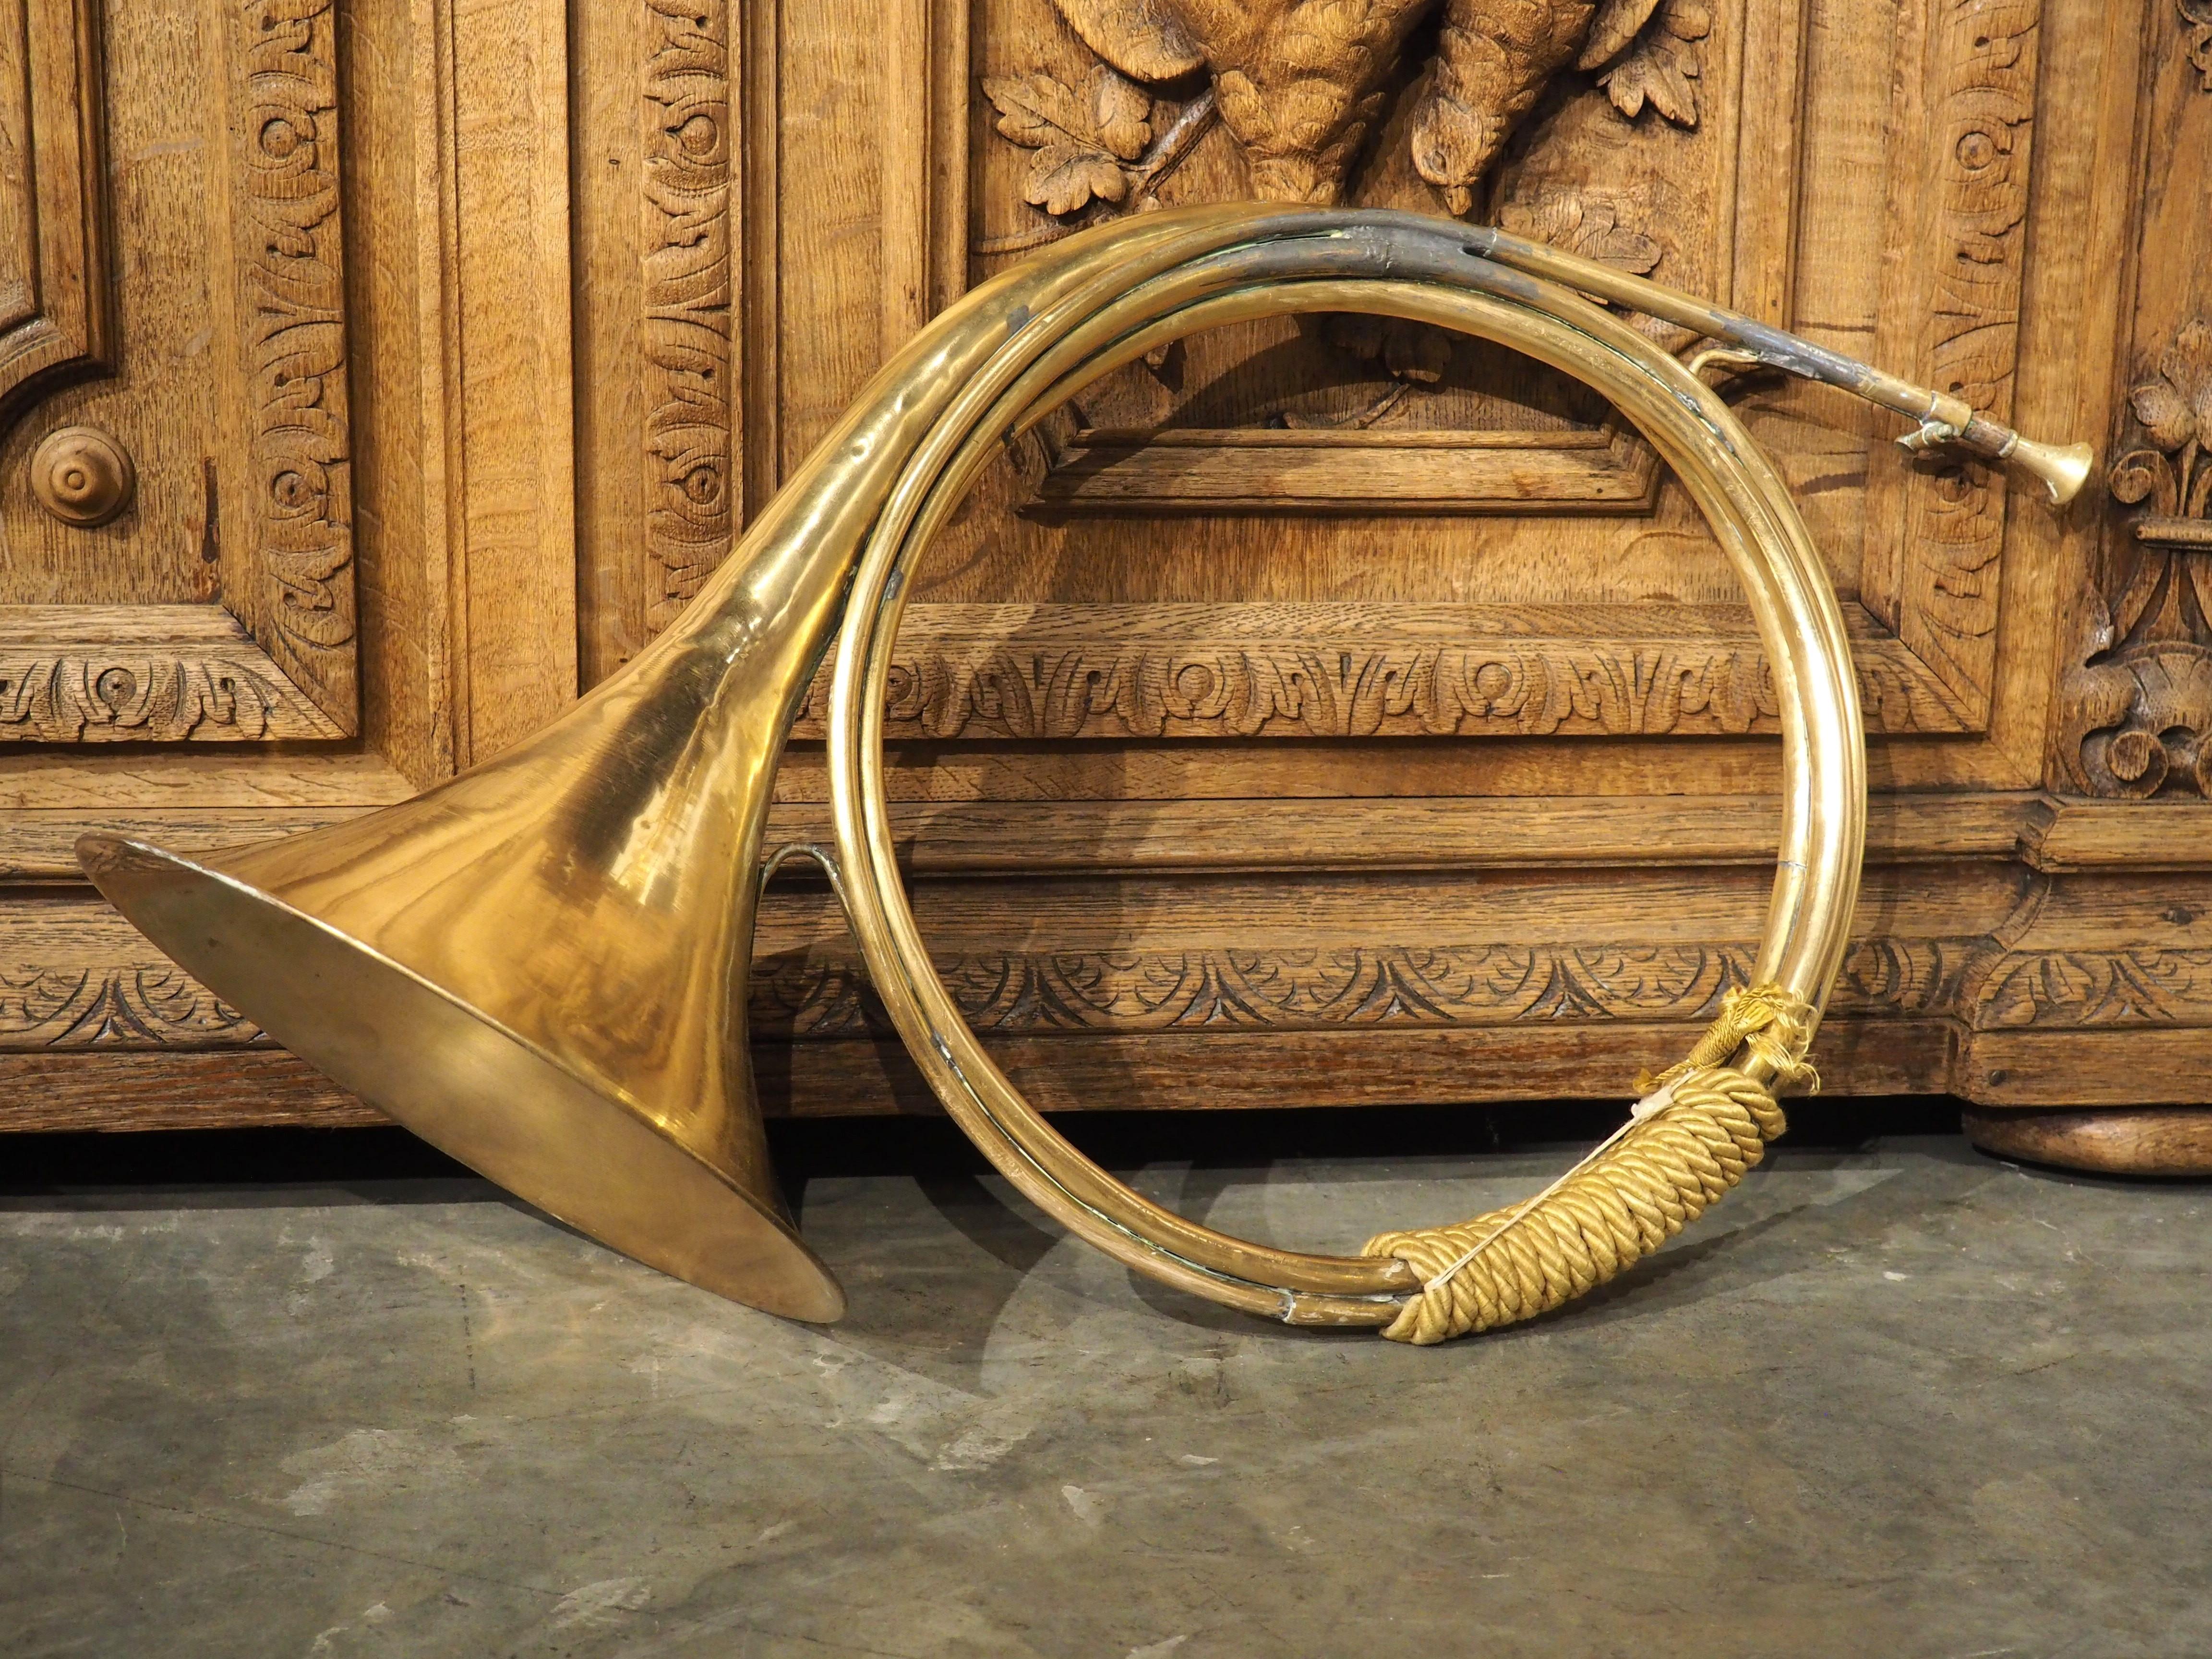 Ancêtre des cors d'orchestre modernes, ce cor de chasse était porté par un membre de l'équipe de chasse au renard ou au cerf, appelé le chasseur. Contrairement aux cors d'orchestre, cette version pour cuivres n'a pas de soupape et repose sur